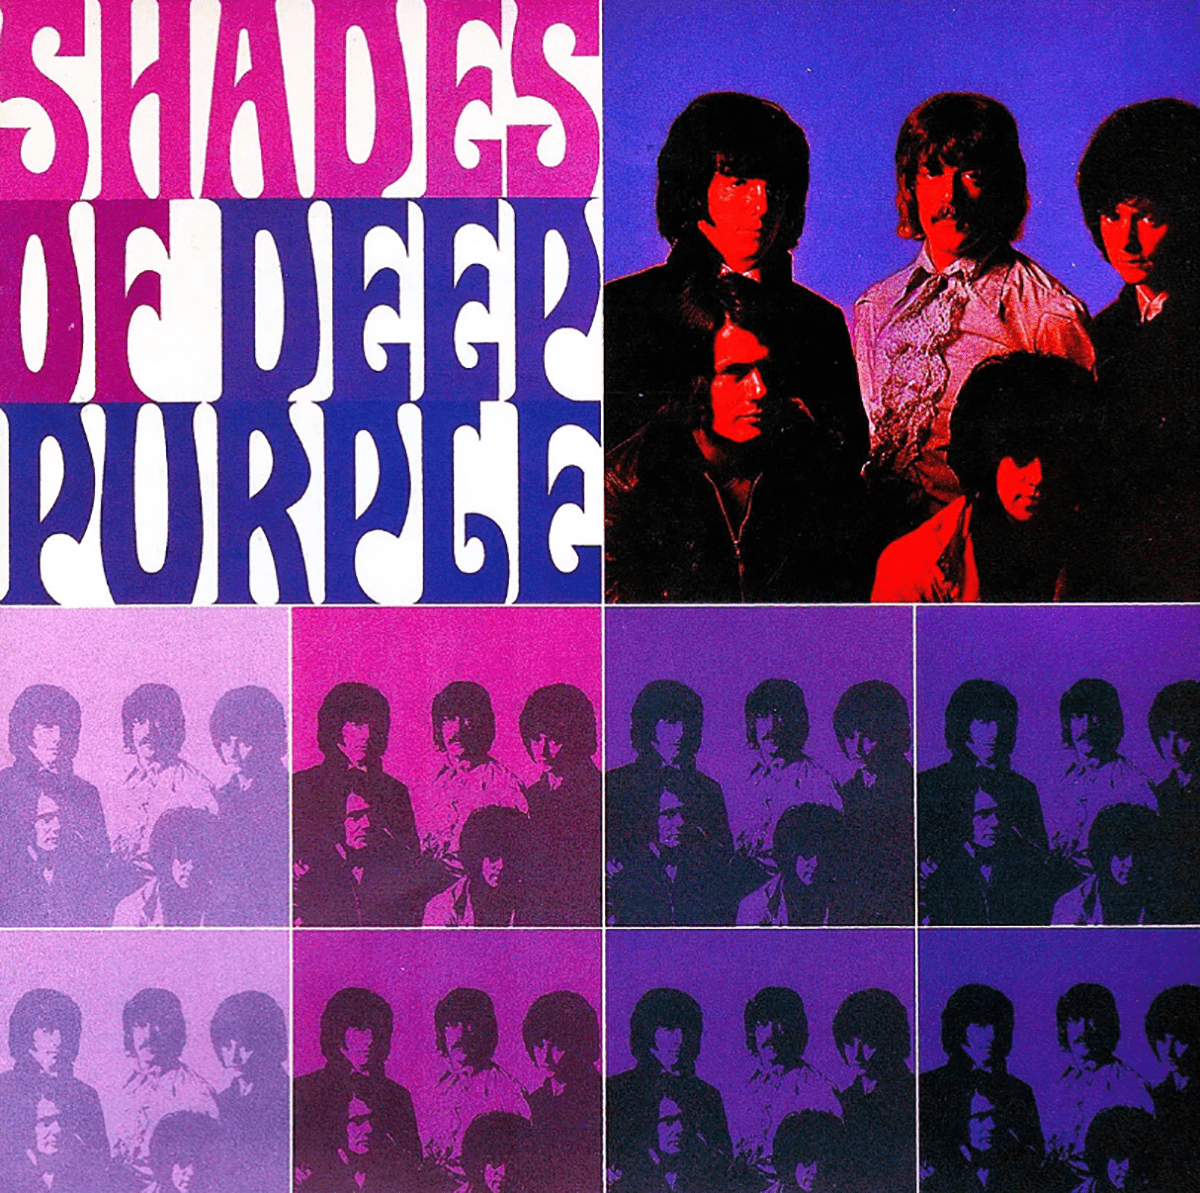 Portada del álbum de estudio "Shades of Deep Purple", 1968